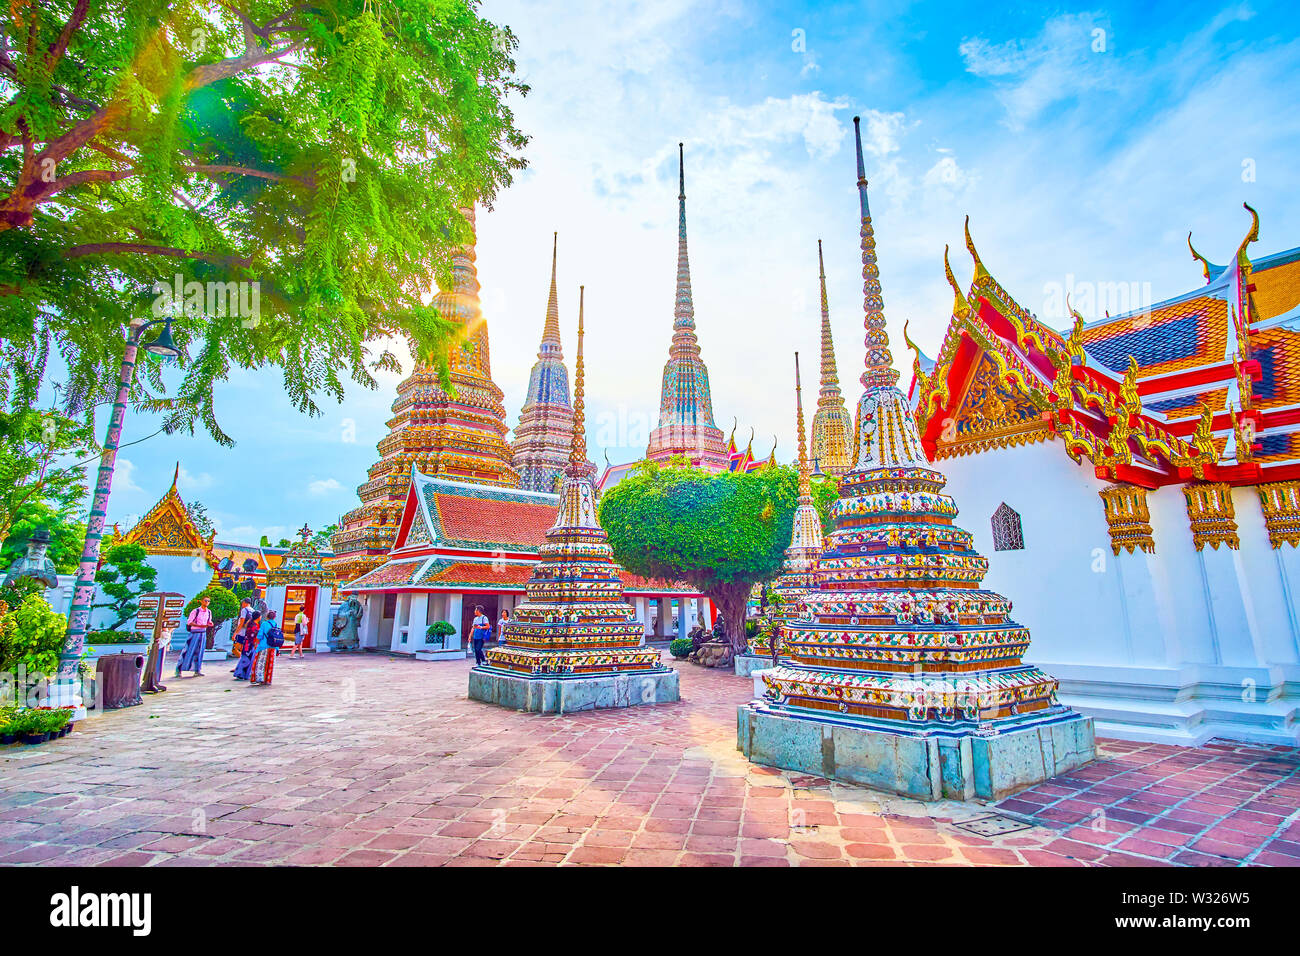 BANGKOK, THAILAND - 22 April, 2019: Der Abend Vergnügen entlang der Innenhof des Wat Pho Tempel genießen großartige Architektur der berühmten Religion c Stockfoto